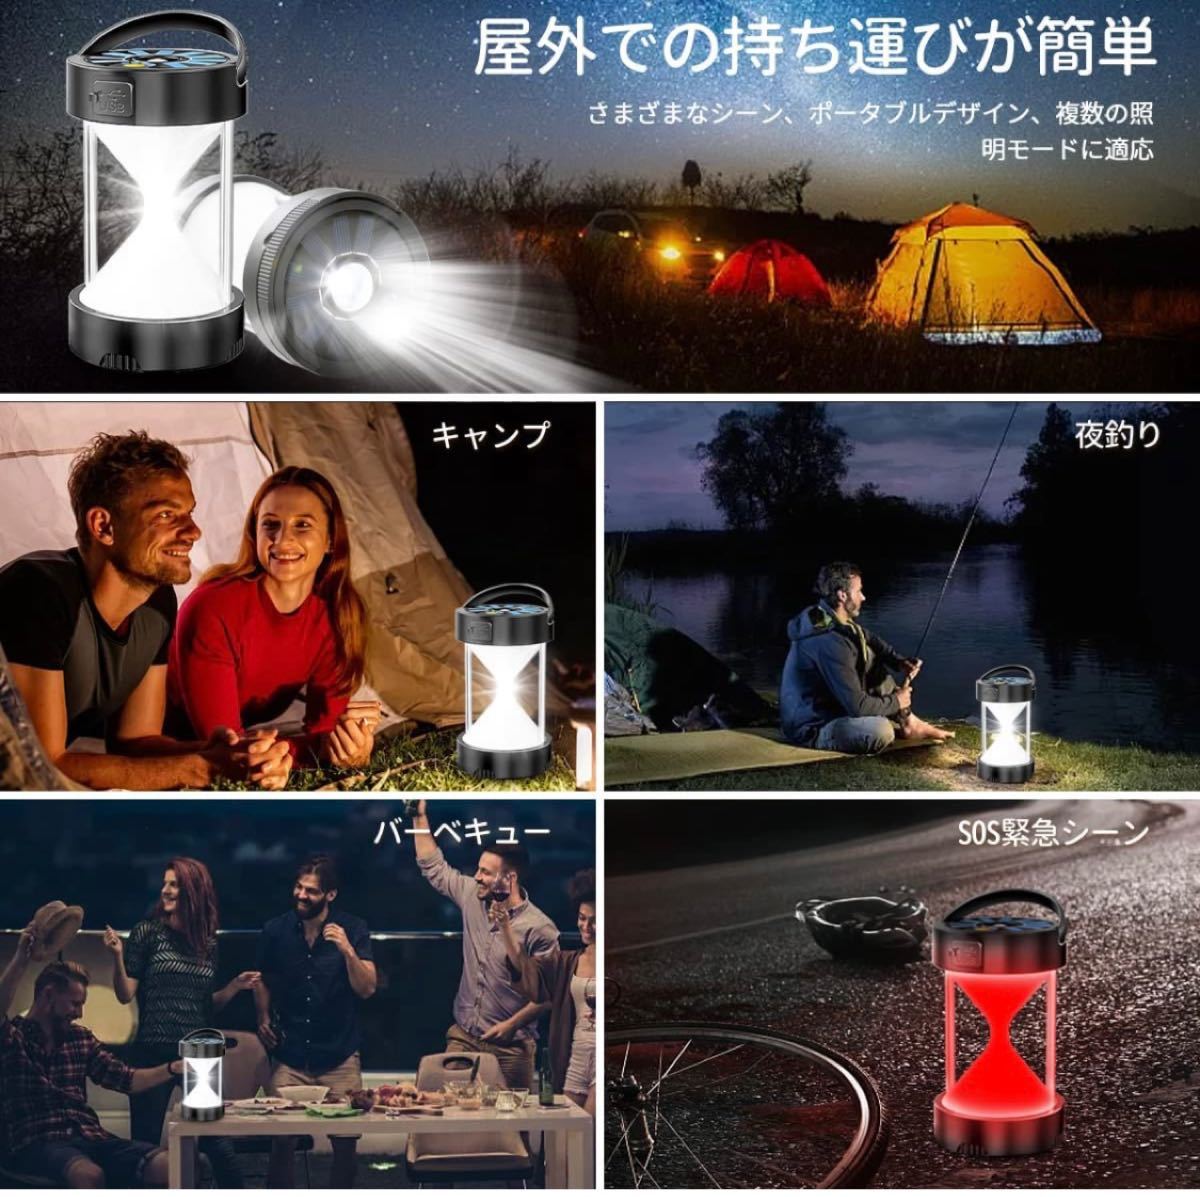 【大特価】LEDランタン アウトドア キャンプ 防災 非常用 /停電対策